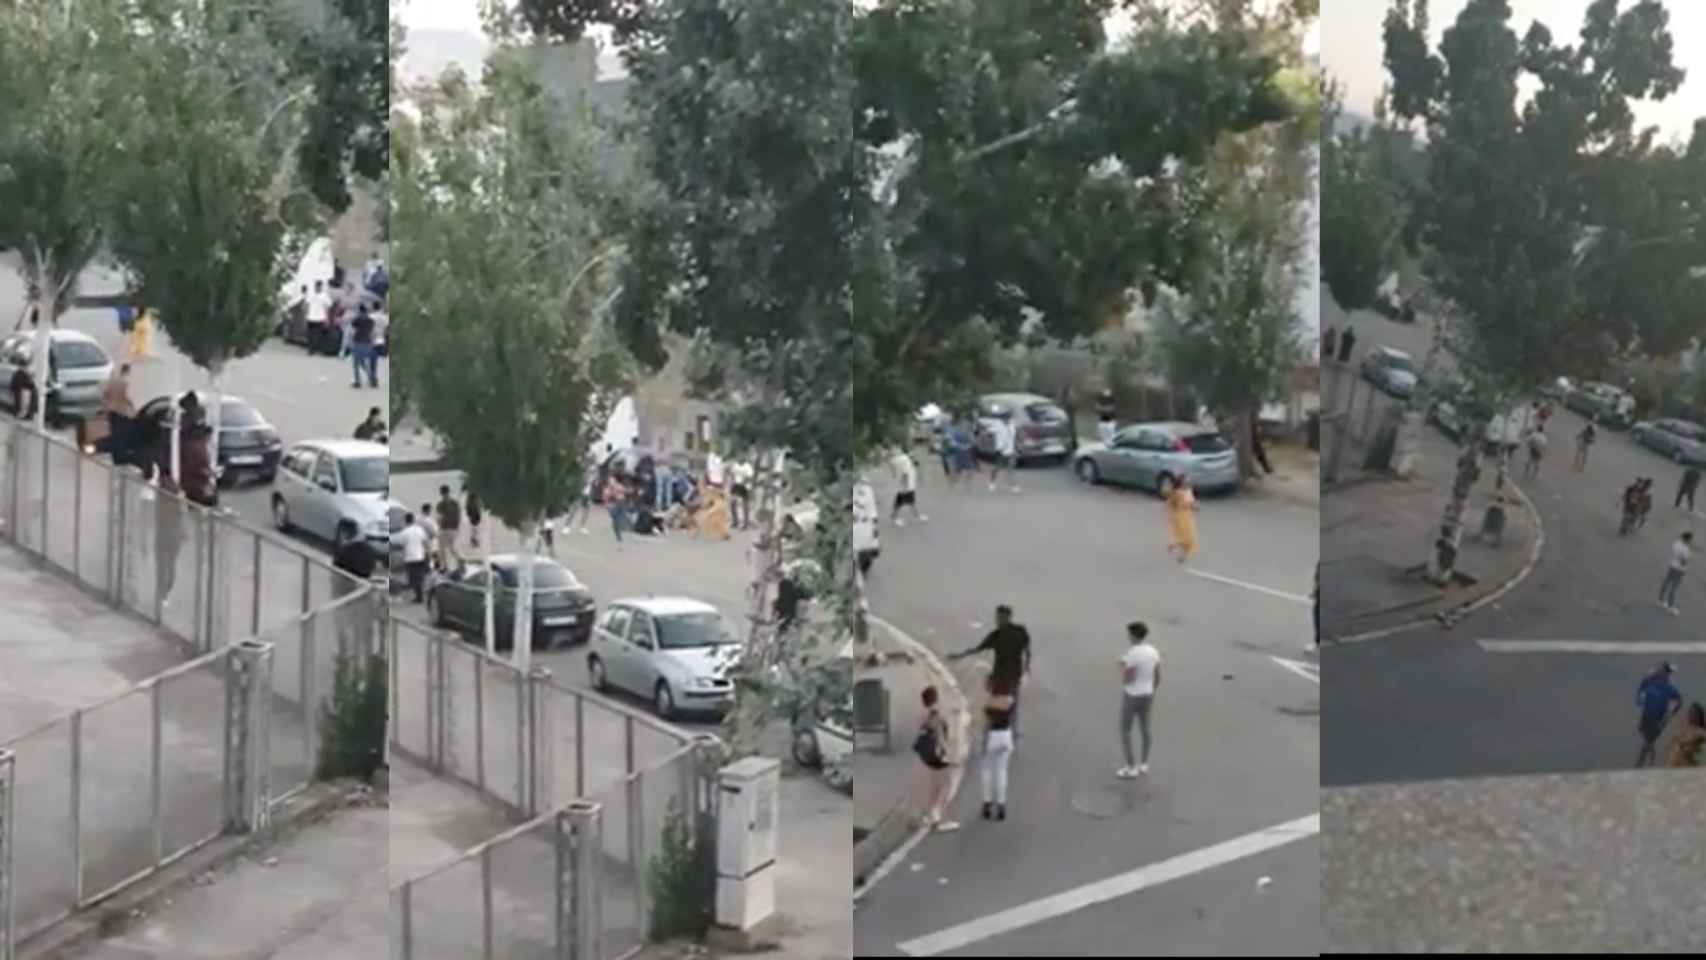 Fotogramas del vídeo donde se observa el apuñalamiento a Kristen a la salida de la discoteca Capitolio de Cornellà / MA